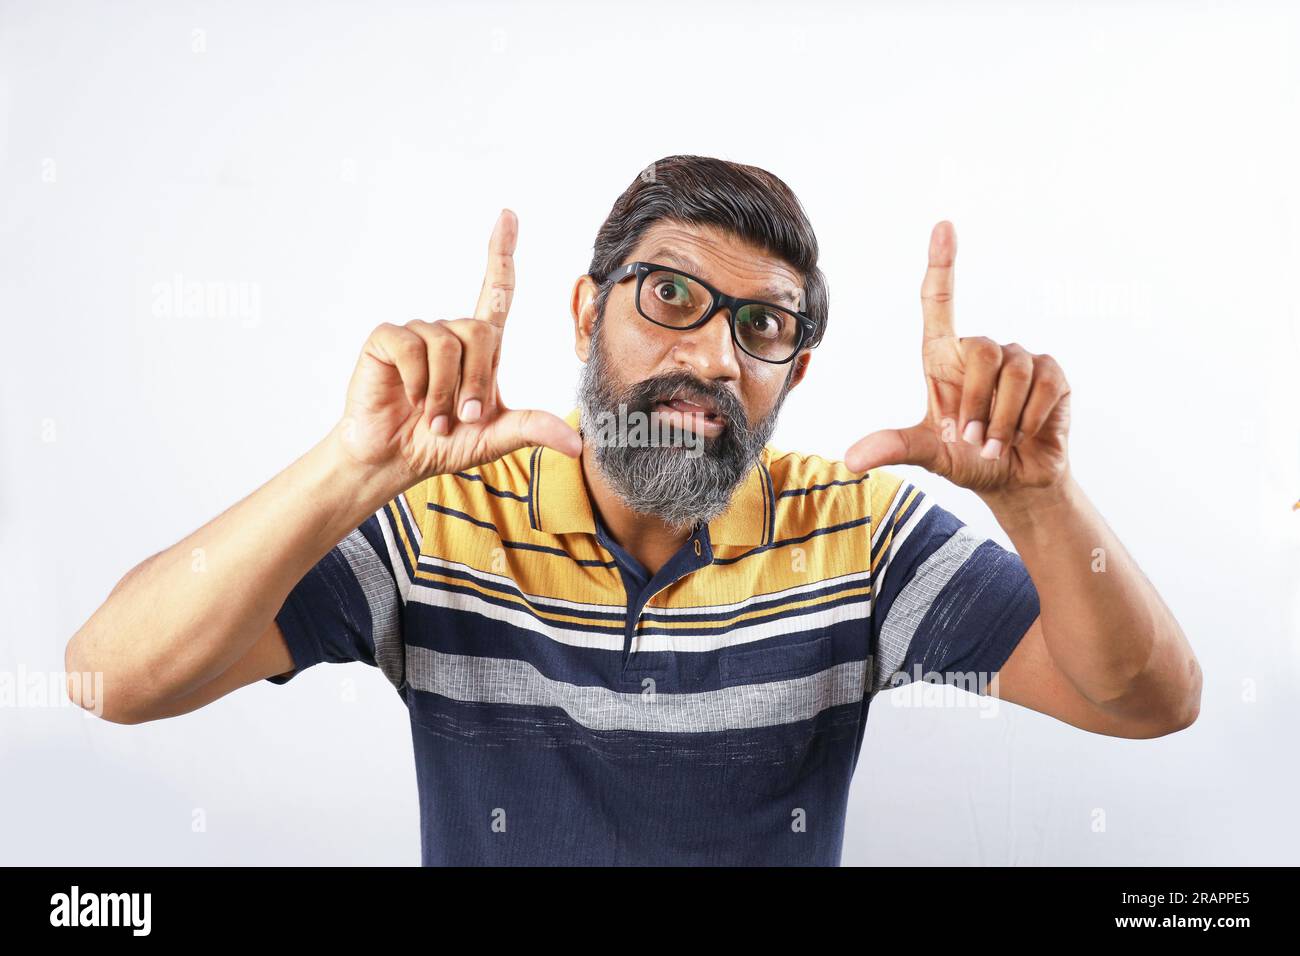 Porträt eines bärtigen Indianers mit Brille und T-Shirt. Seltsame Ausdrücke verzerrten das Gesicht. Ein betäubter Mann, der verschiedene Stimmungen von verrückter Persönlichkeit zeigt. Stockfoto